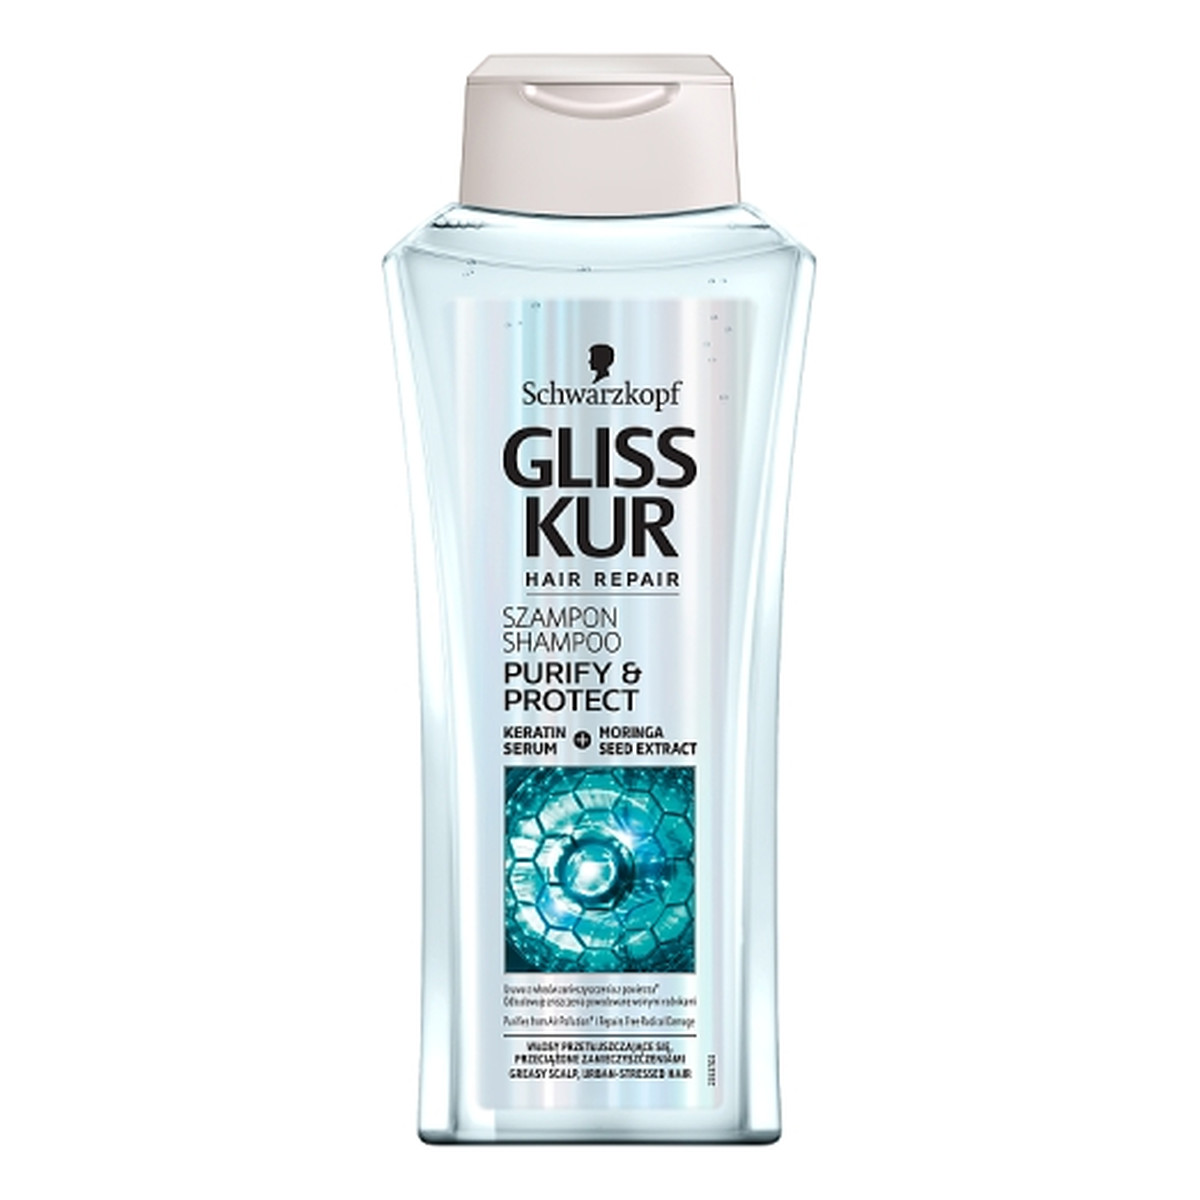 Gliss Purify & Protect szampon do włosów przetłuszczających się, przeciążonych zanieczyszczeniami 400ml